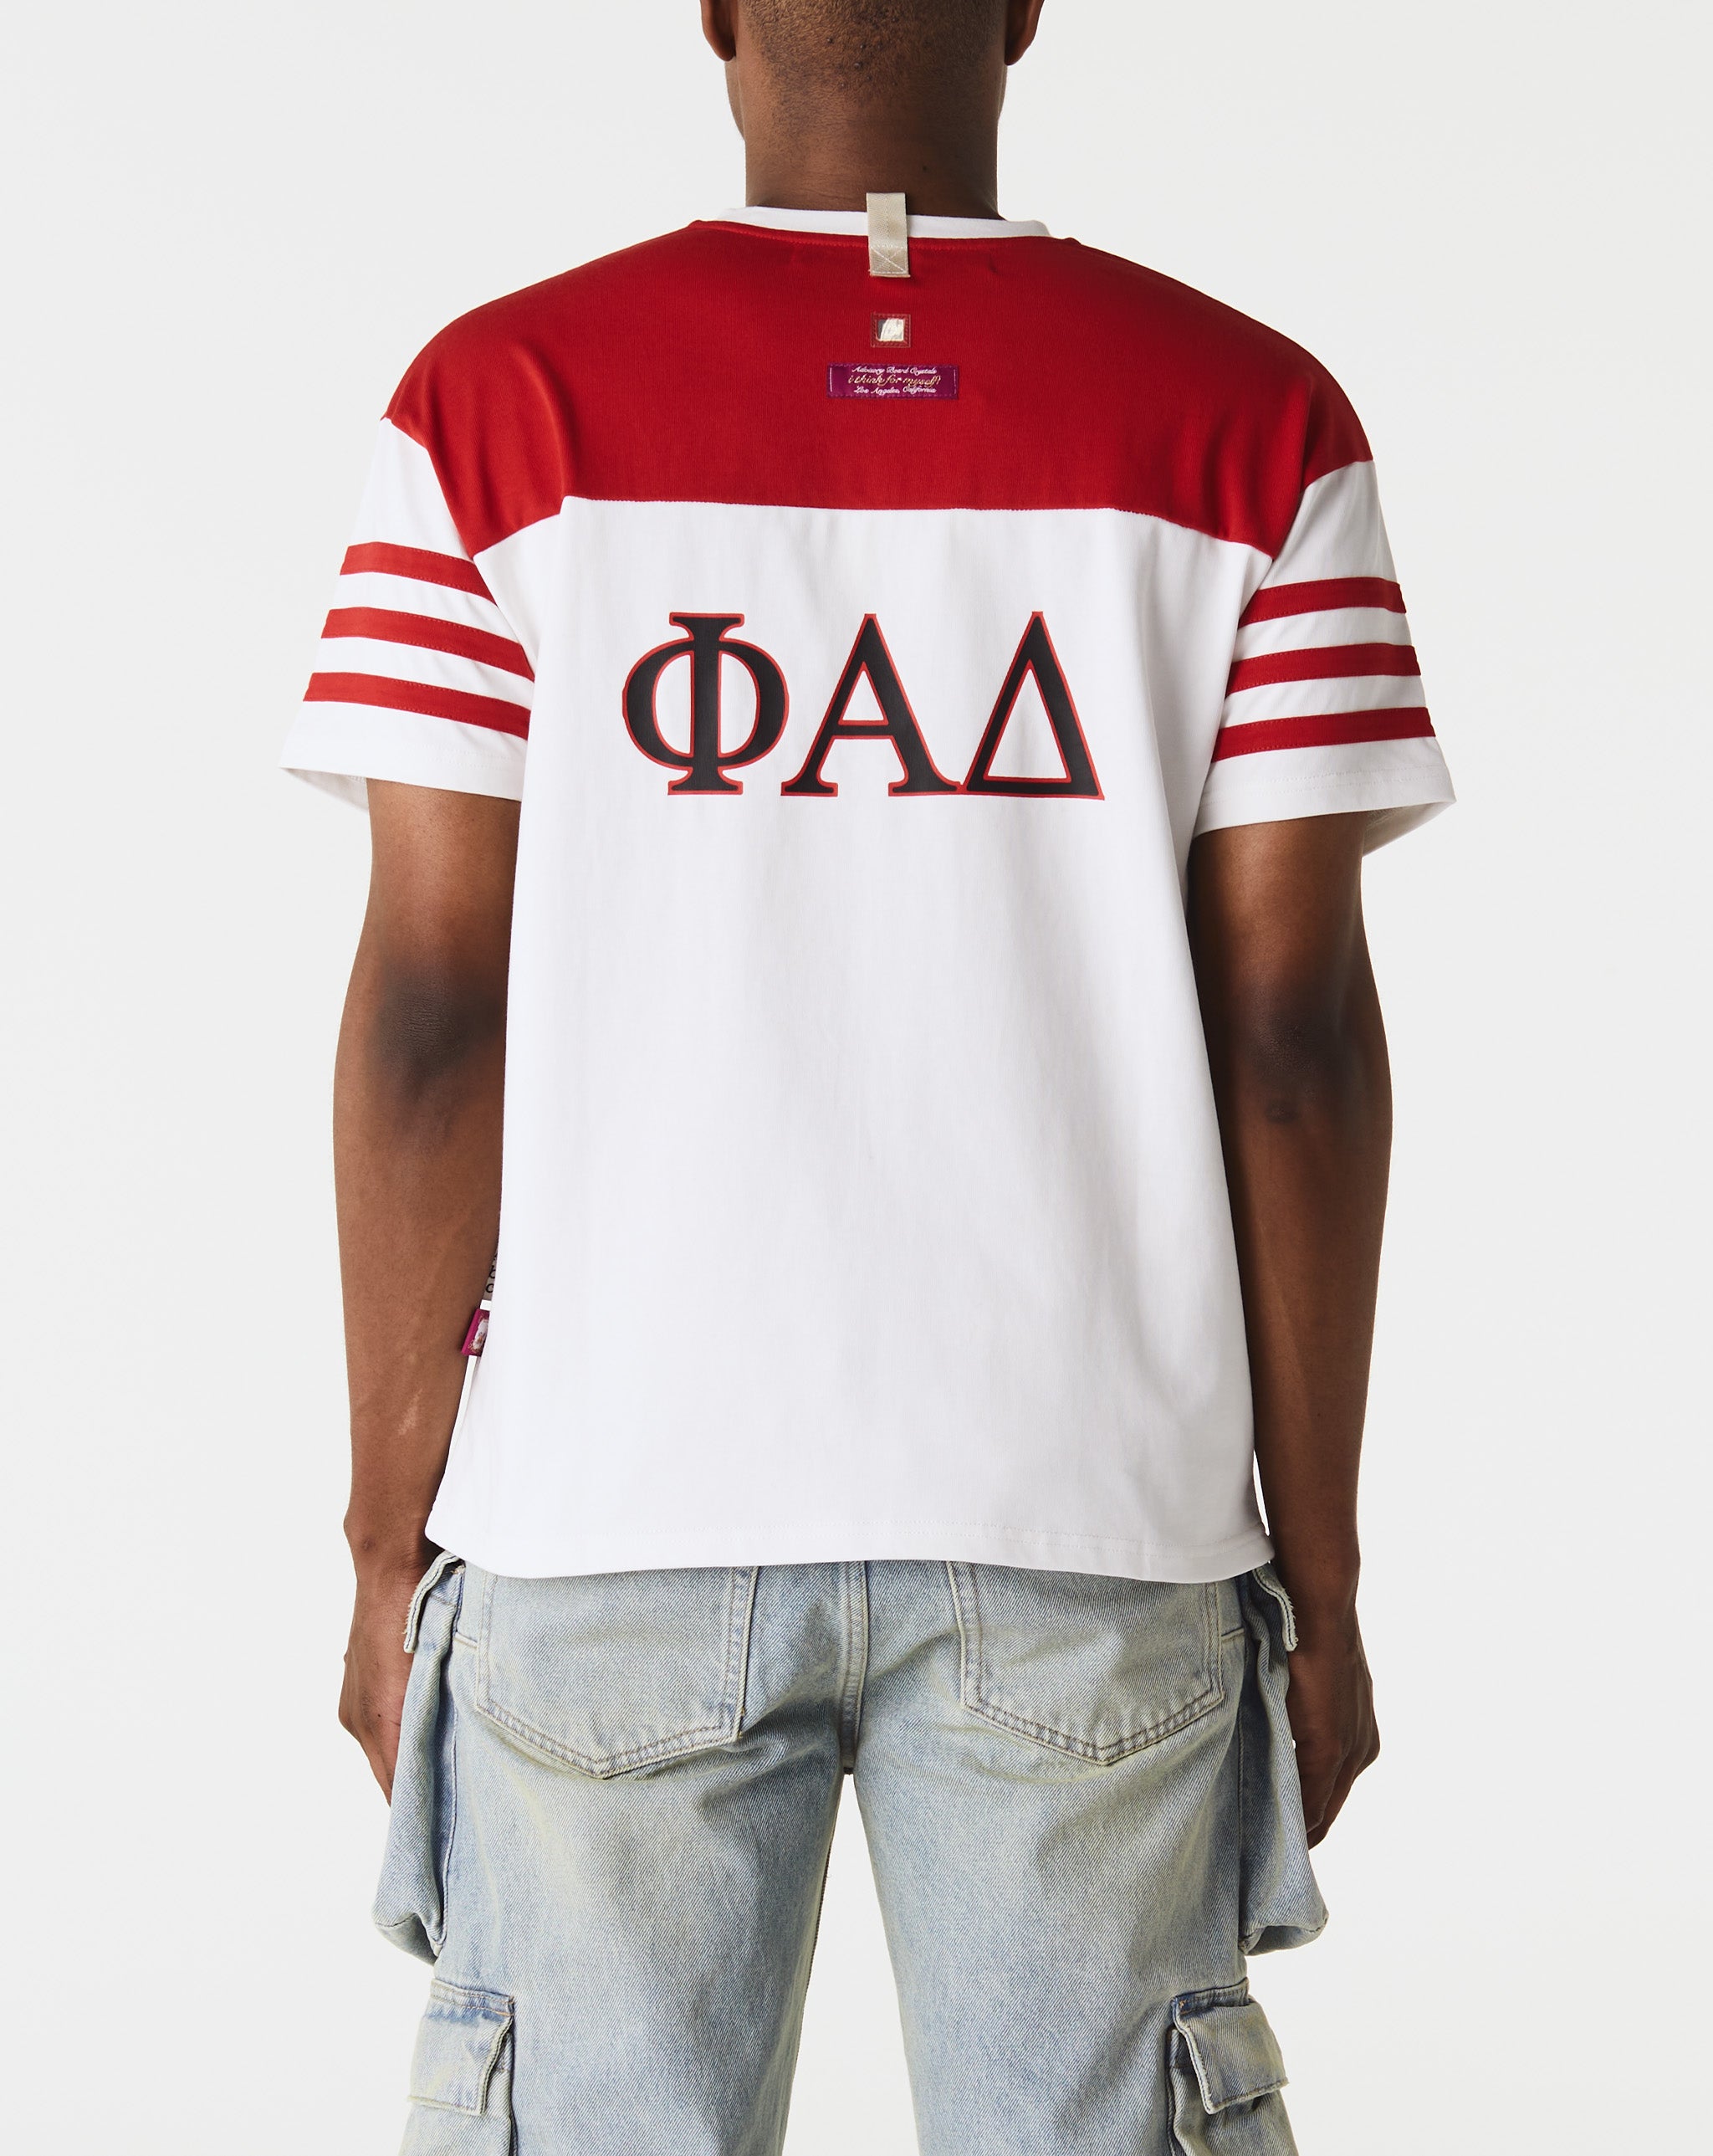 Herd Mentality T-Shirt Fraternity T-Shirt  - Cheap Urlfreeze Jordan outlet